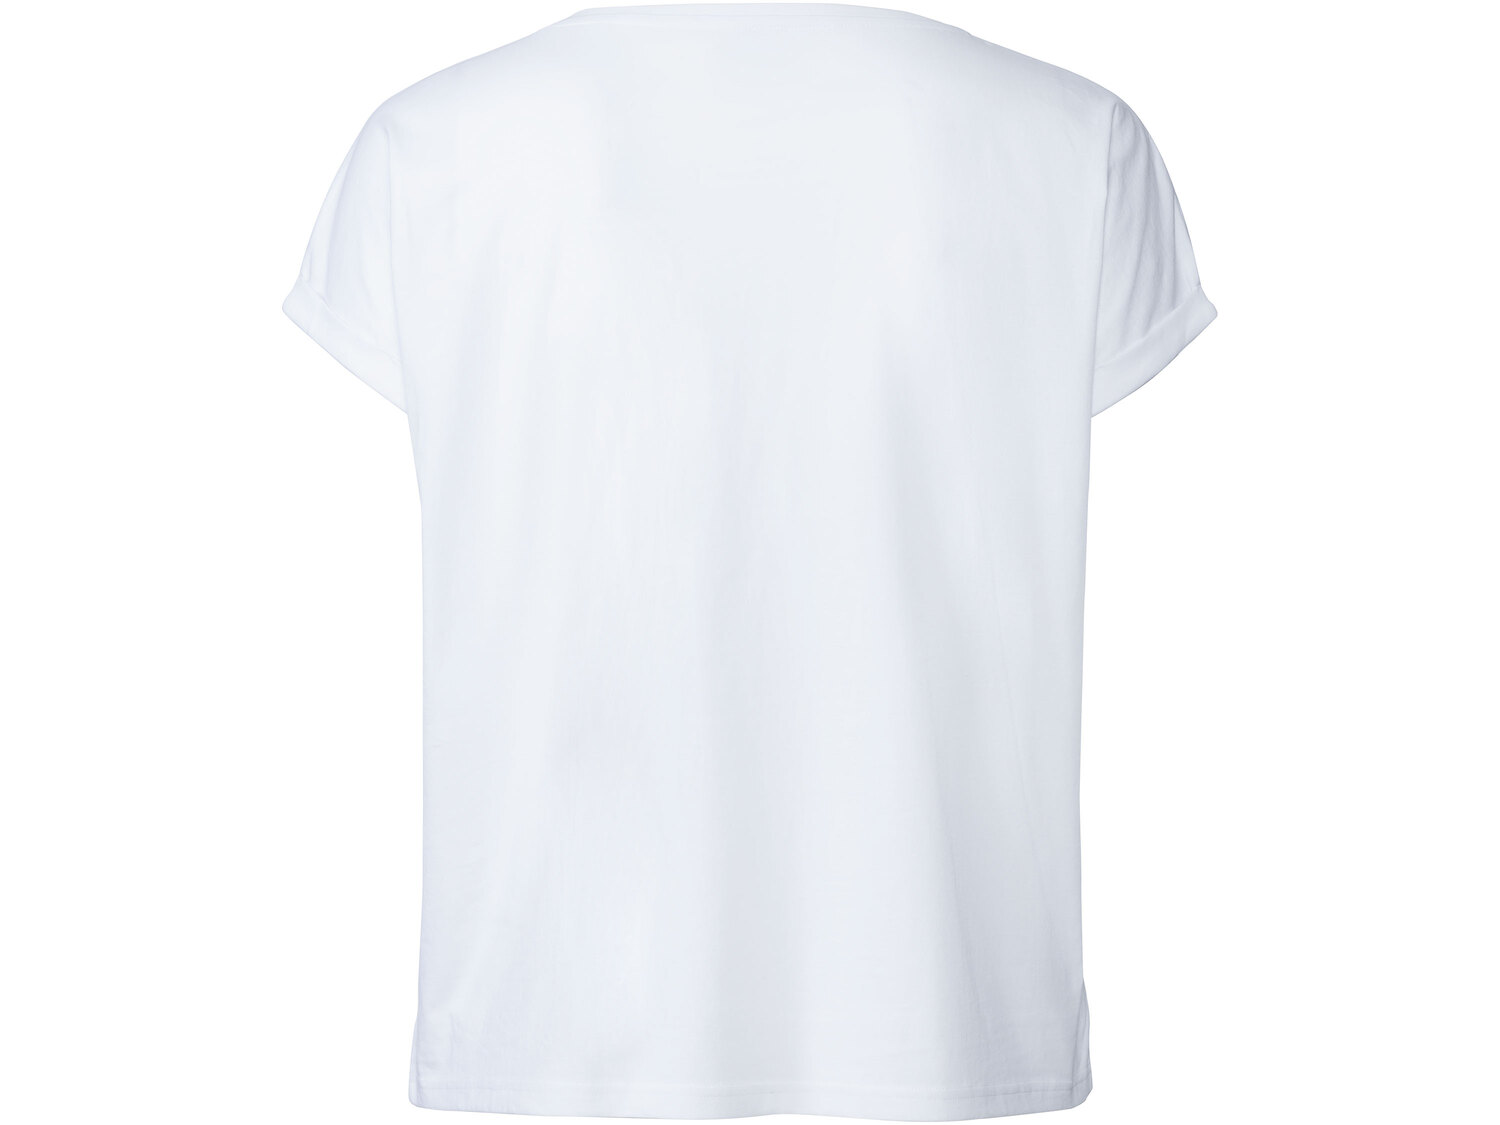 T-shirt damski z bawełny Esmara, cena 24,99 PLN 
- 100% bawełny
- rozmiary: XL-3XL
T-shirt ...